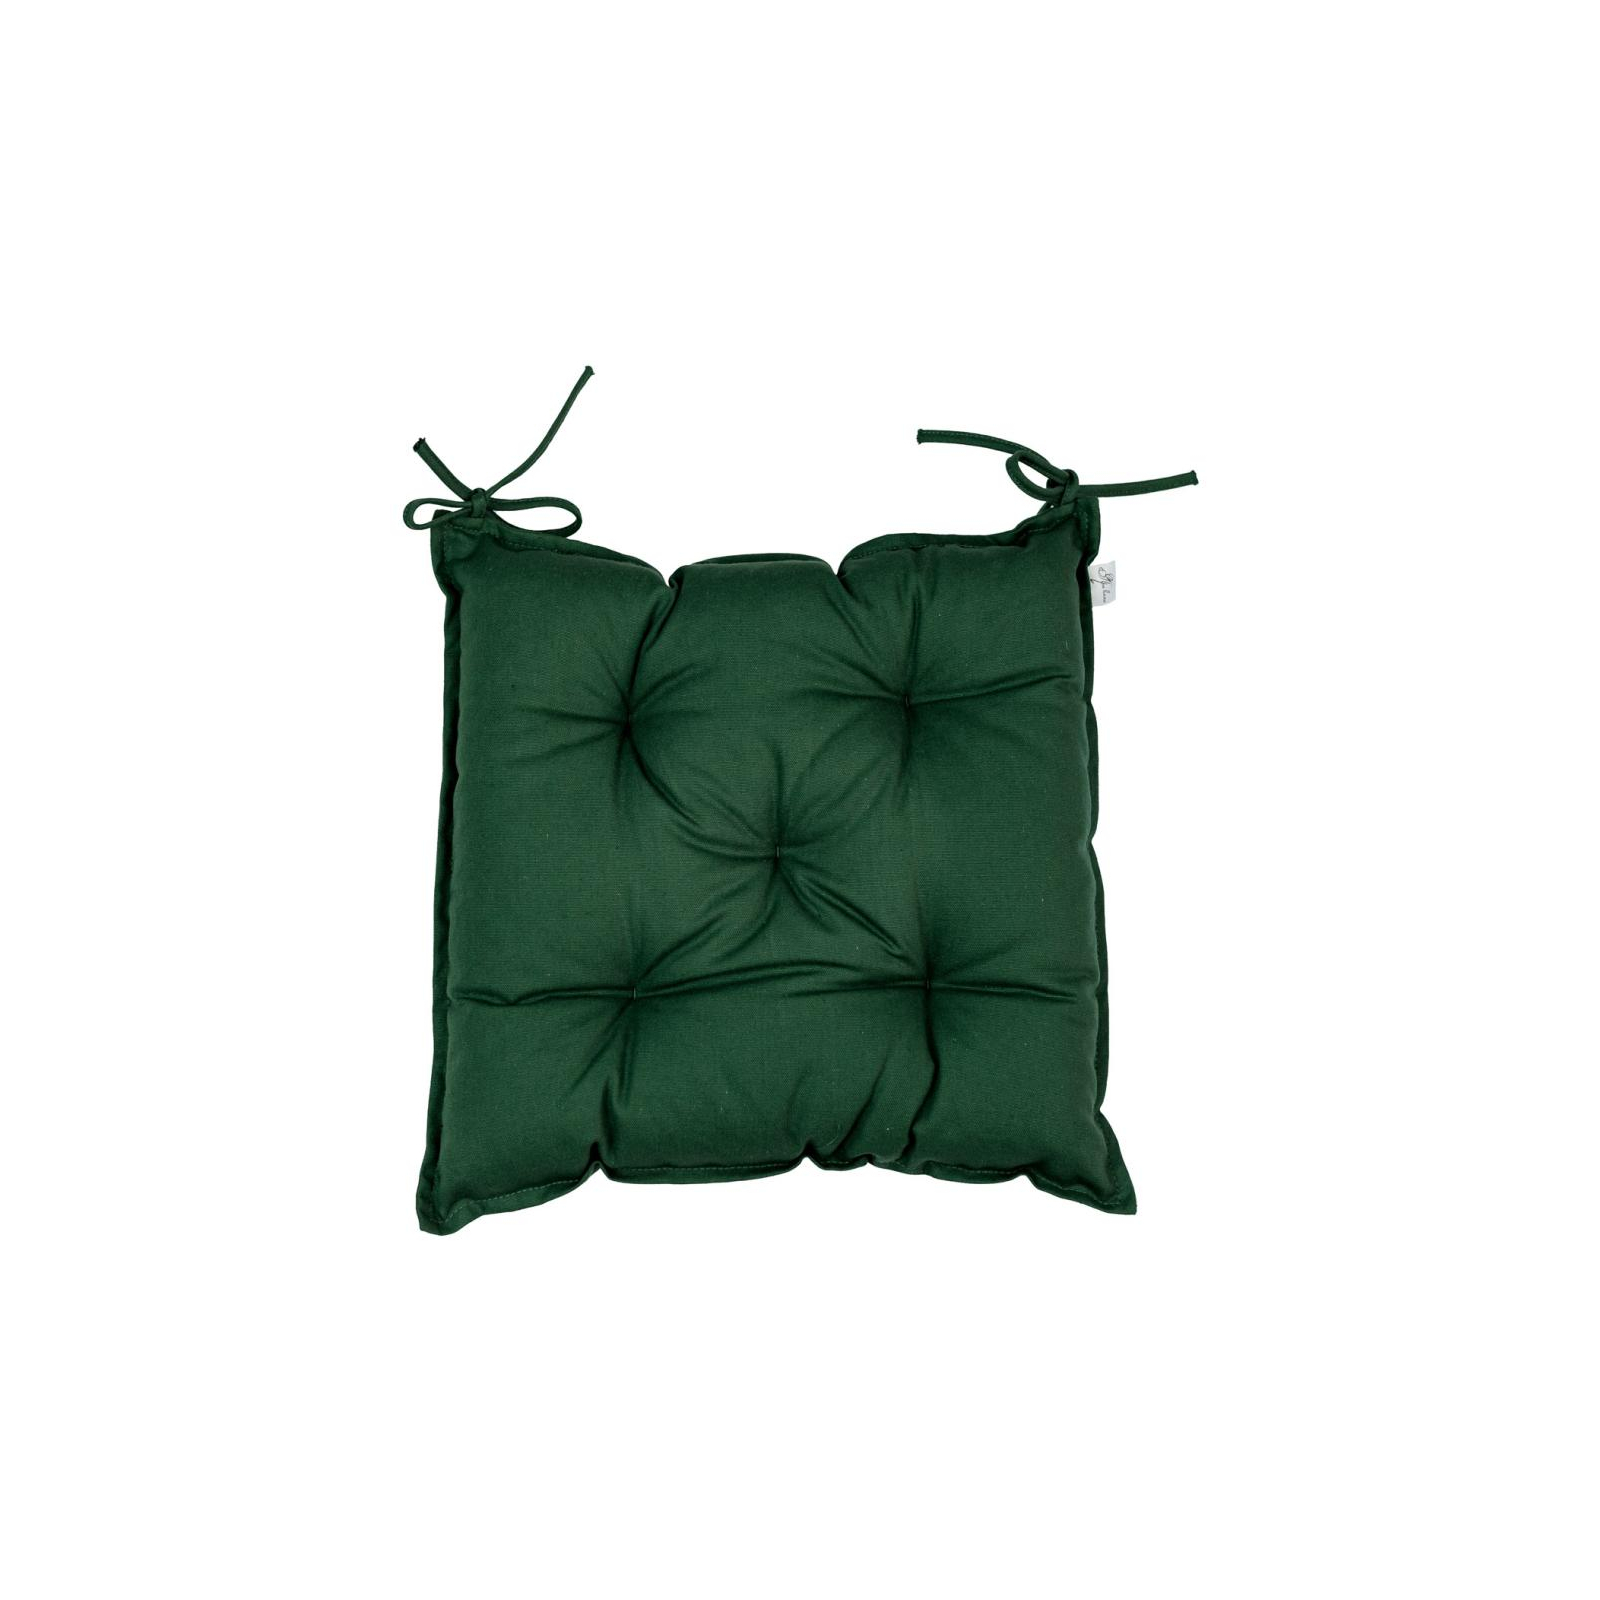 Подушка на стілець Прованс Хвоя зелена 40х40 см (030129)